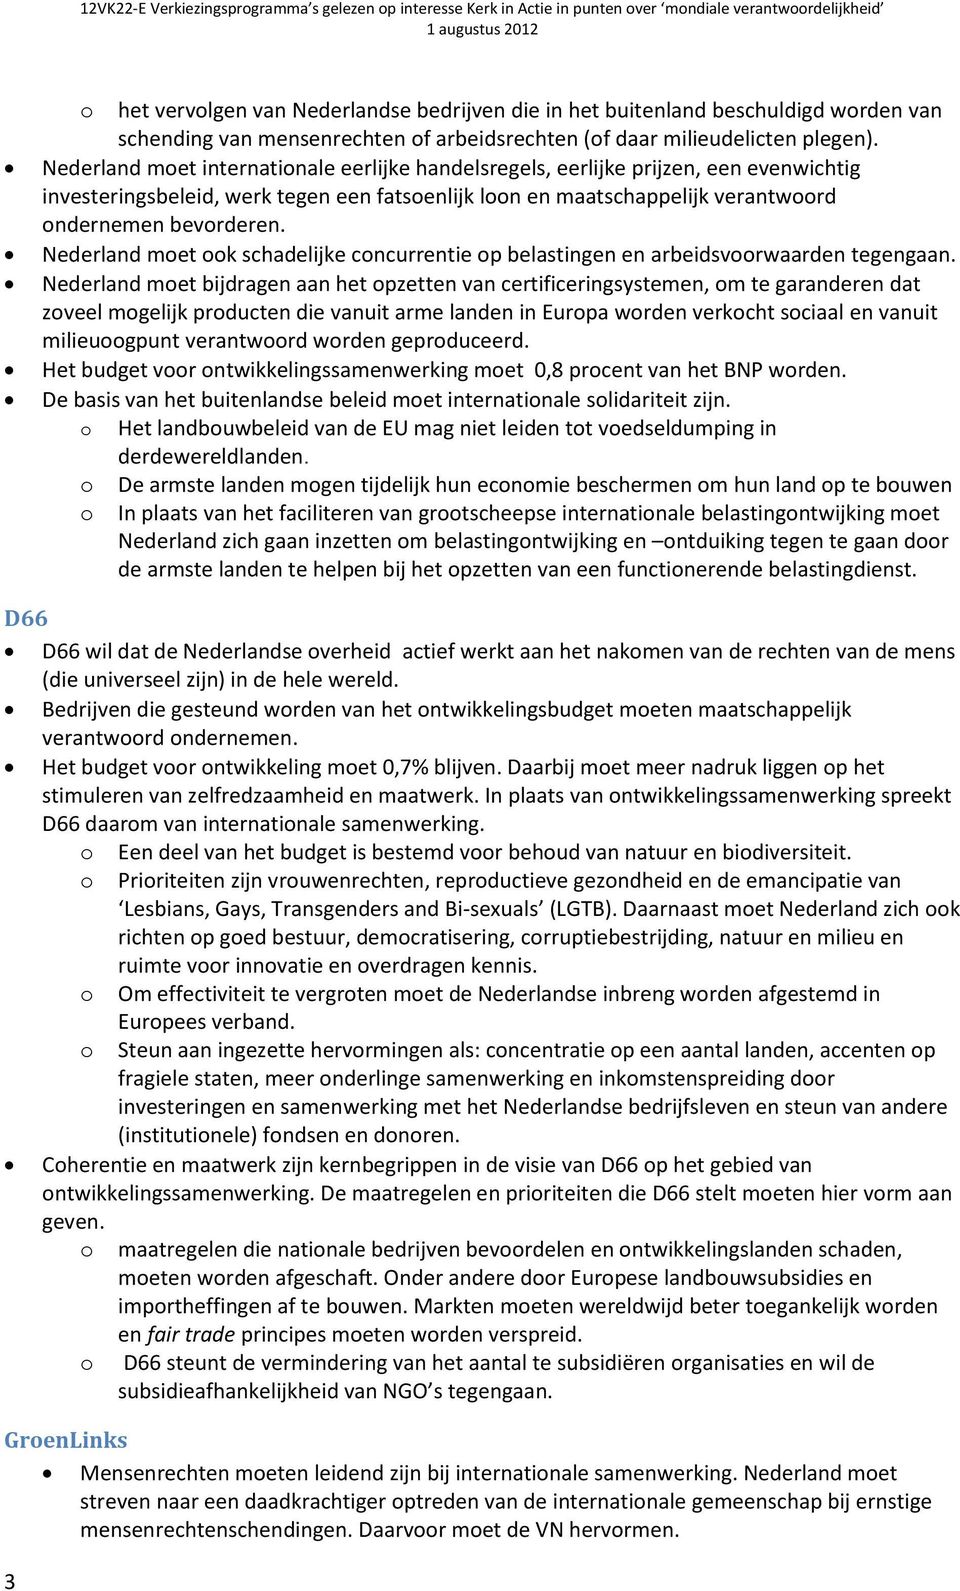 Nederland met k schadelijke cncurrentie p belastingen en arbeidsvrwaarden tegengaan.